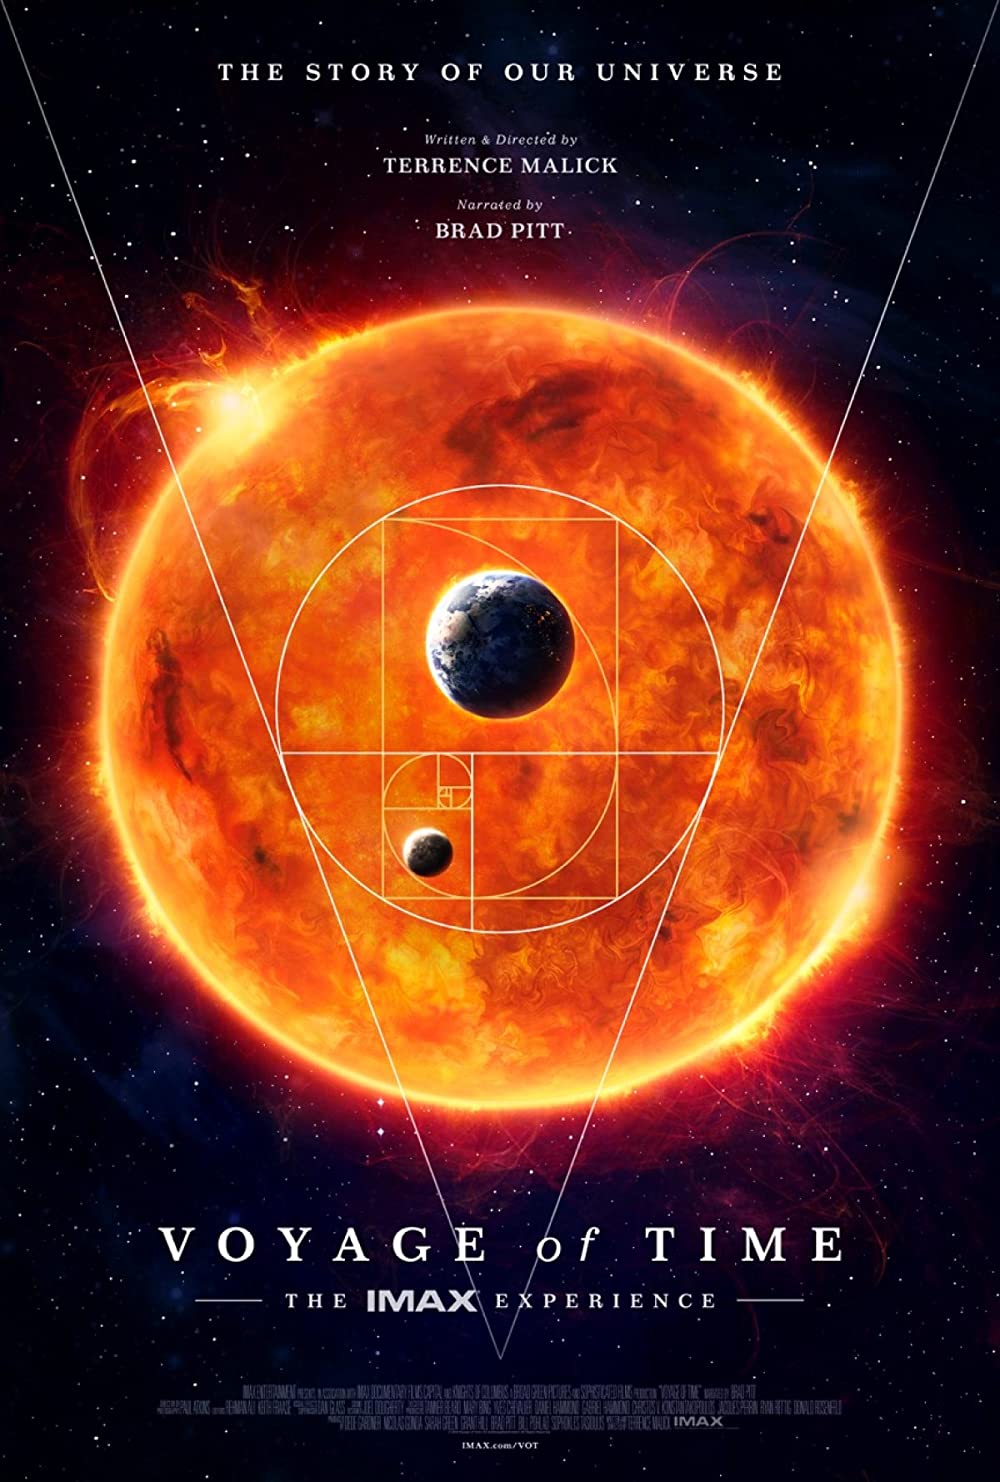 Filmbeschreibung zu Voyage of Time: Life's Journey